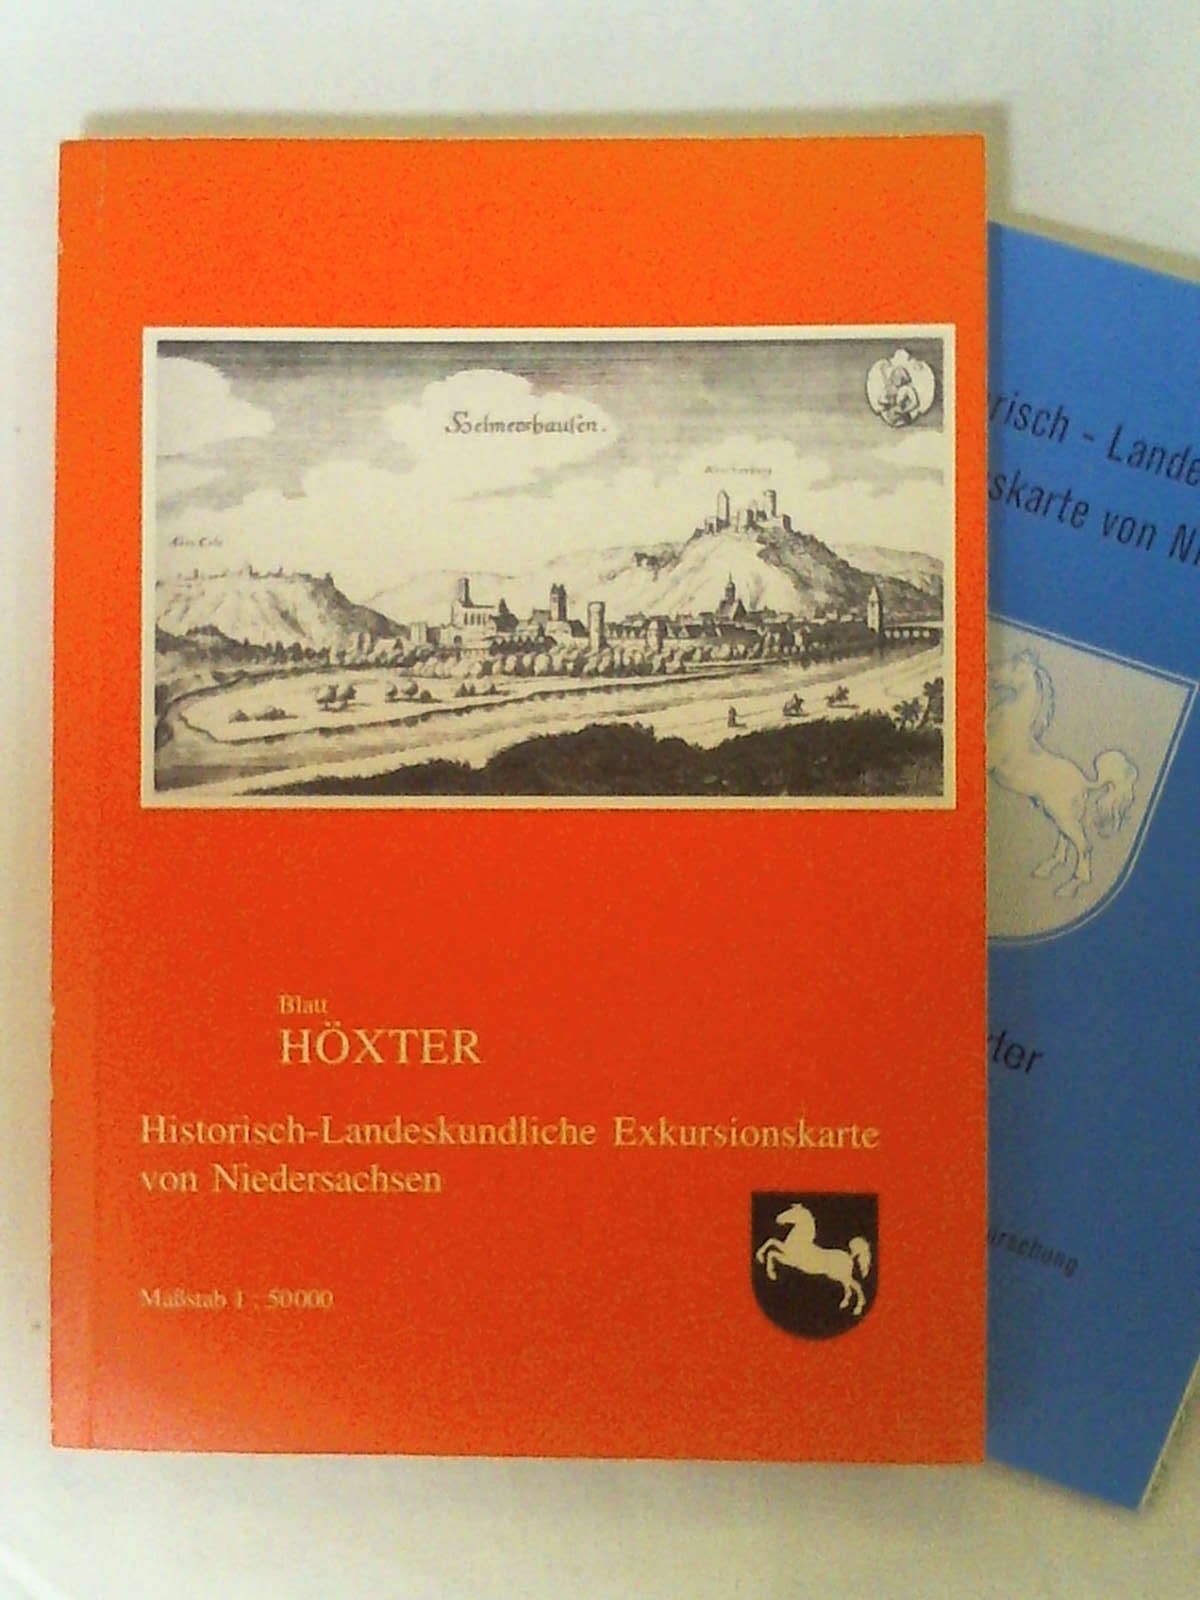 Historisch-Landeskundliche Exkursionskarte von Niedersachsen / Blatt Höxter (Veröffentlichungen des Instituts für Historische Landesforschung der Universität Göttingen)